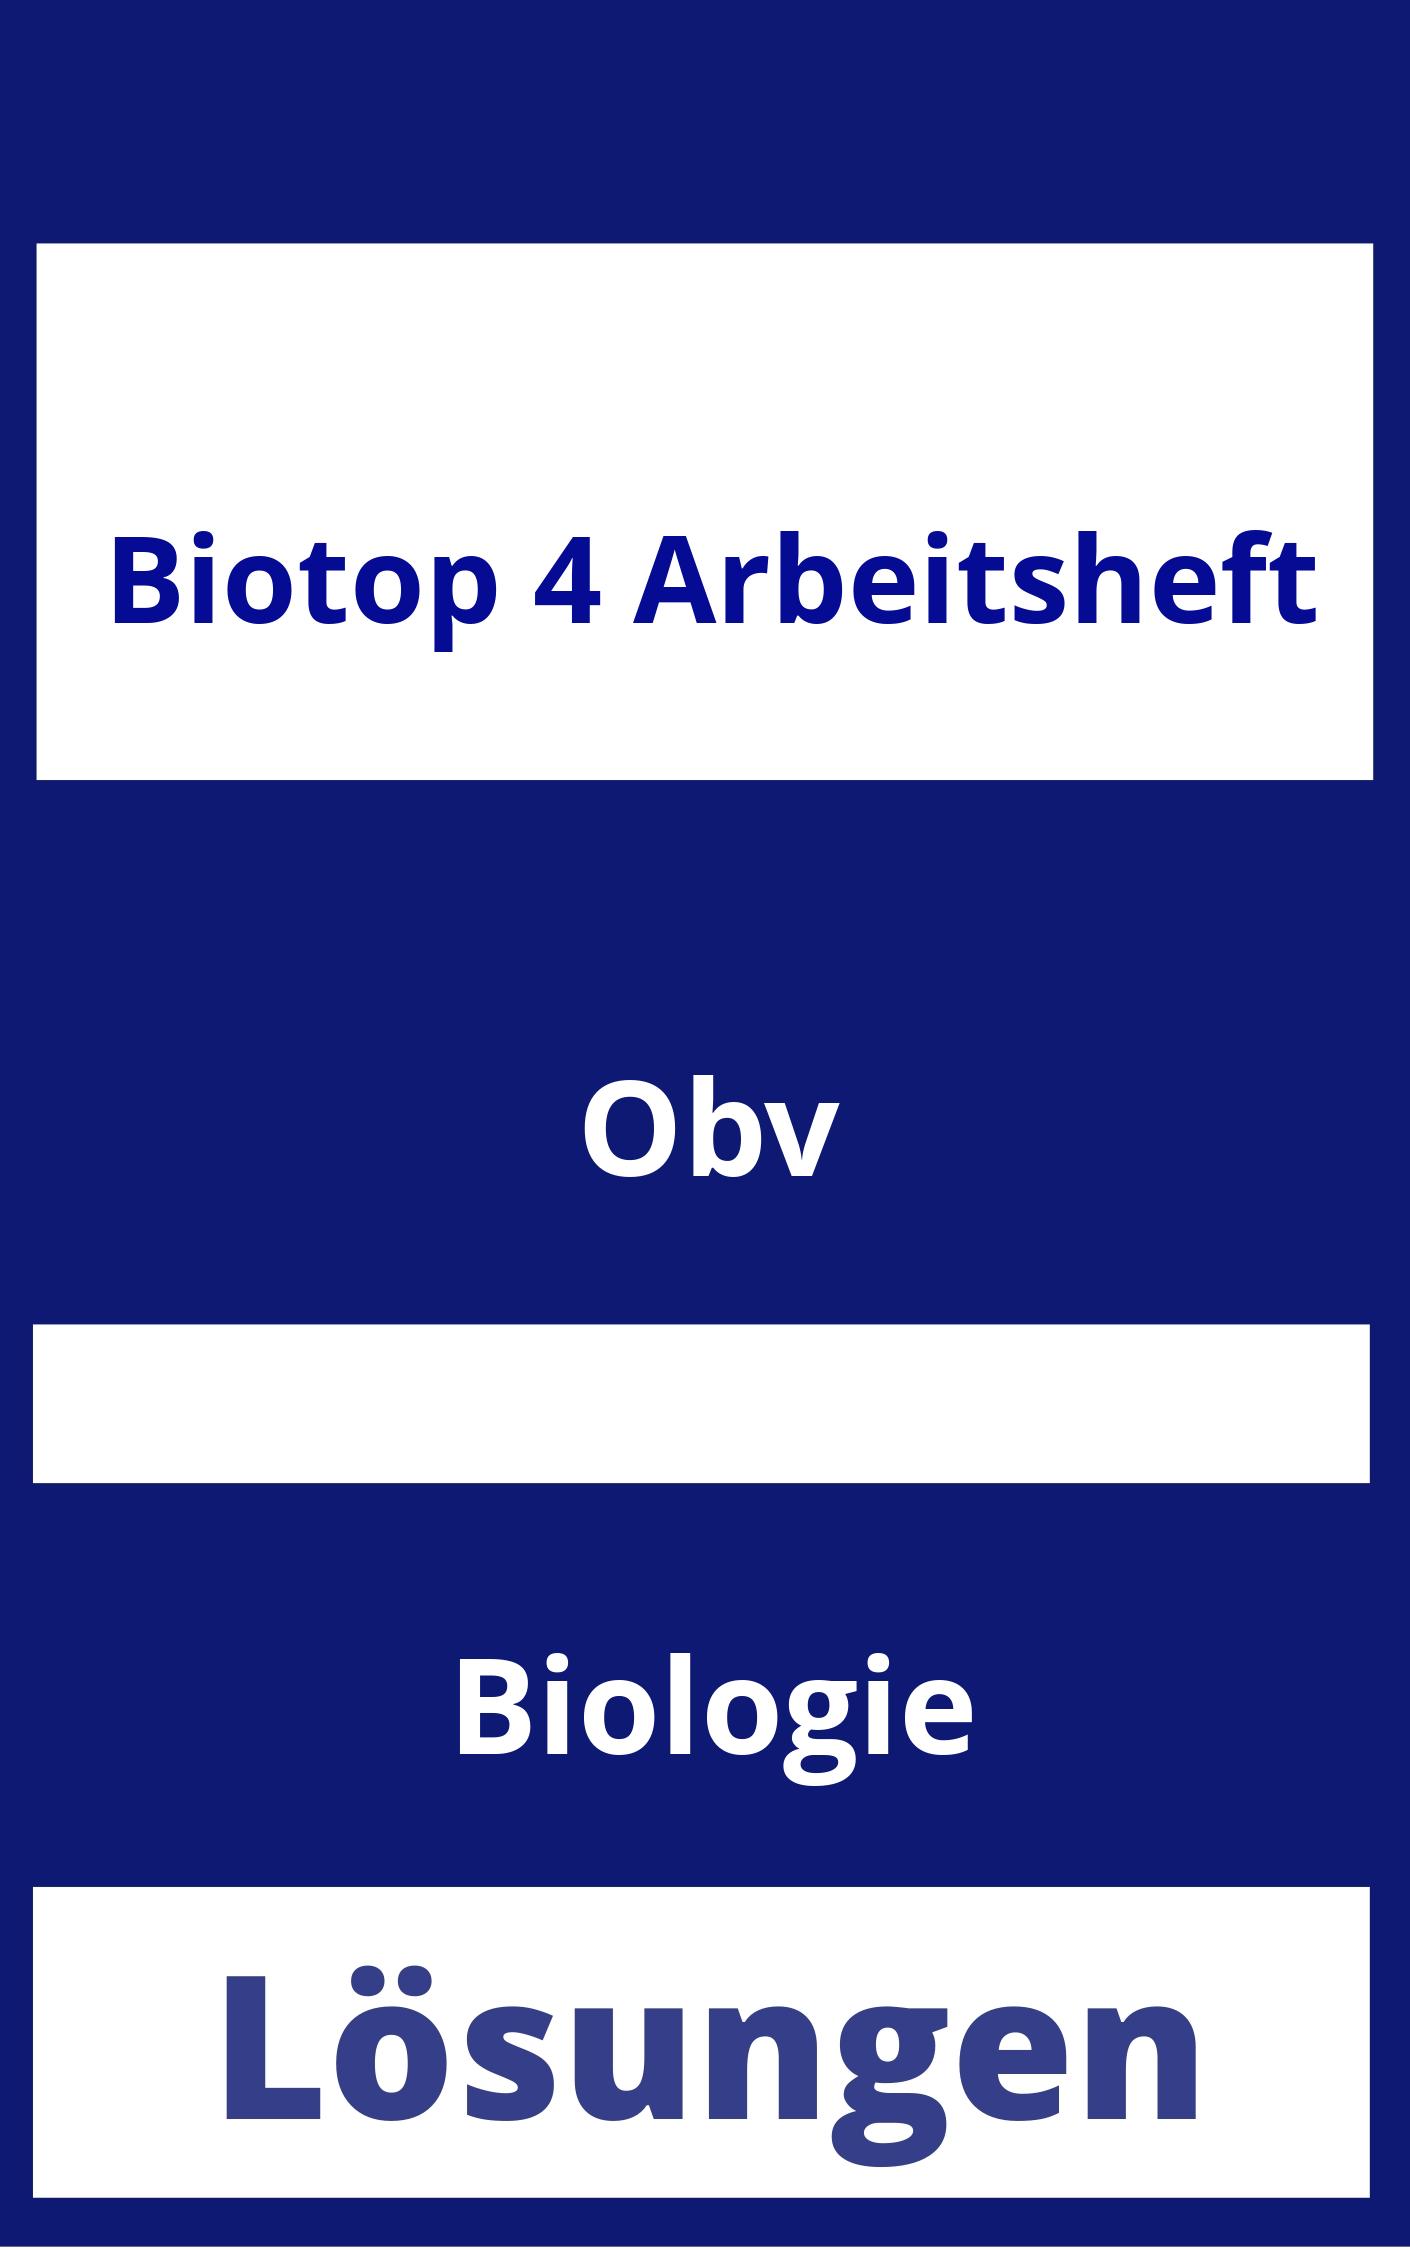 BioTop 4 Arbeitsheft Lösungen PDF